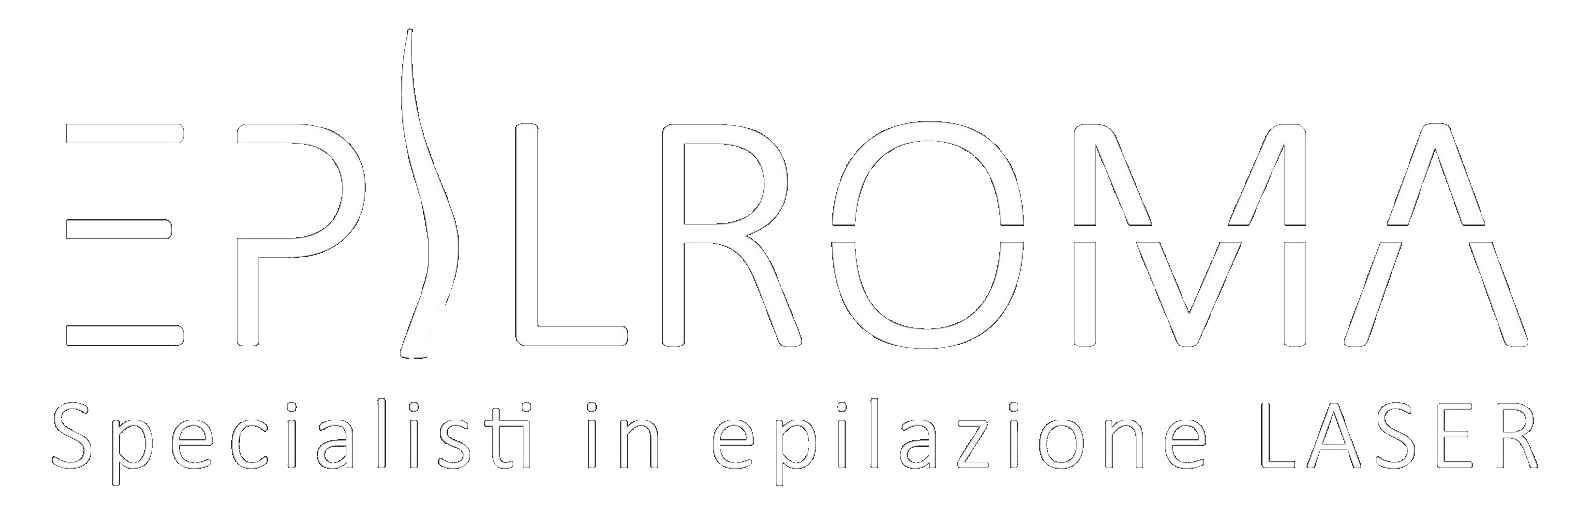 EpilRoma Specialisti in epilazione Laser